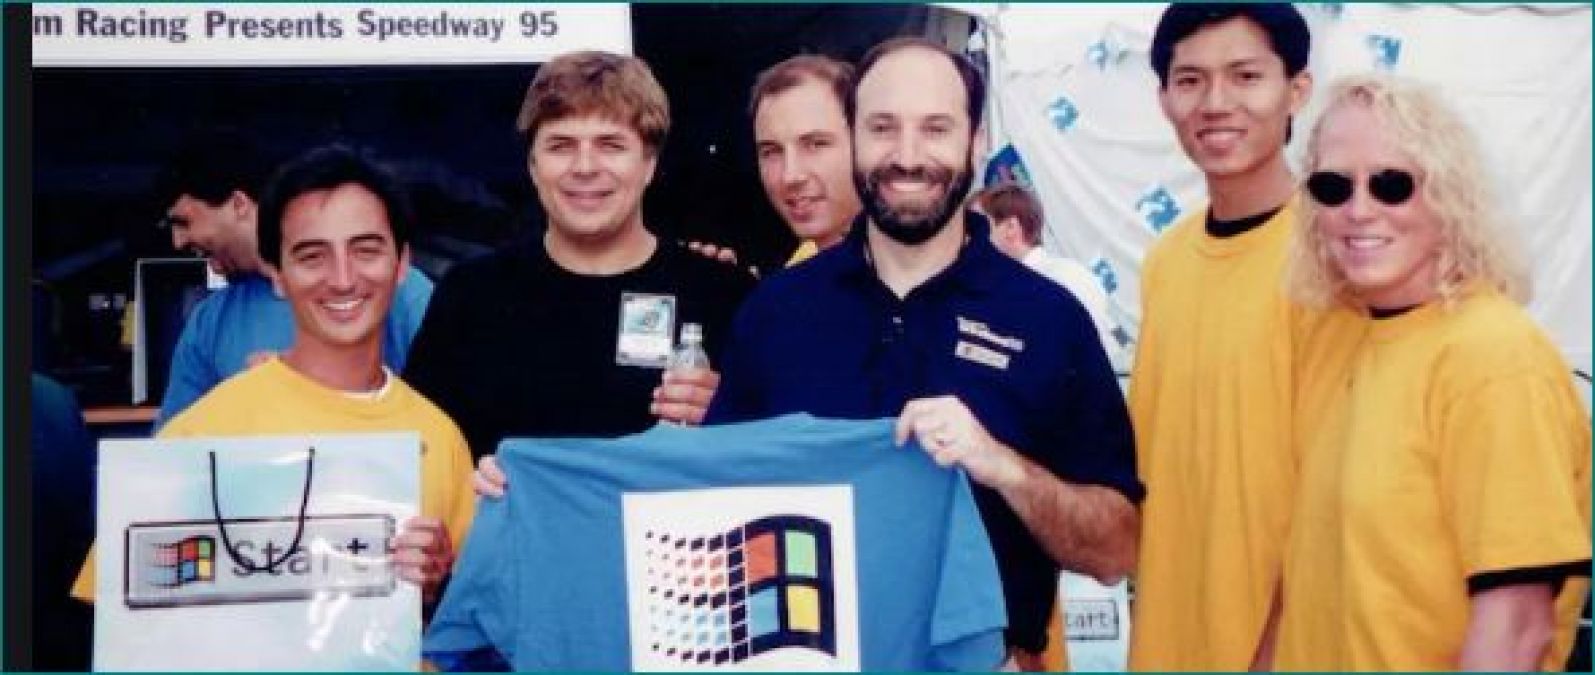 माइक्रोसॉफ्ट के प्रतिष्ठित सॉफ्टवेयर विंडोज 95 ने पूरे किये 25 साल